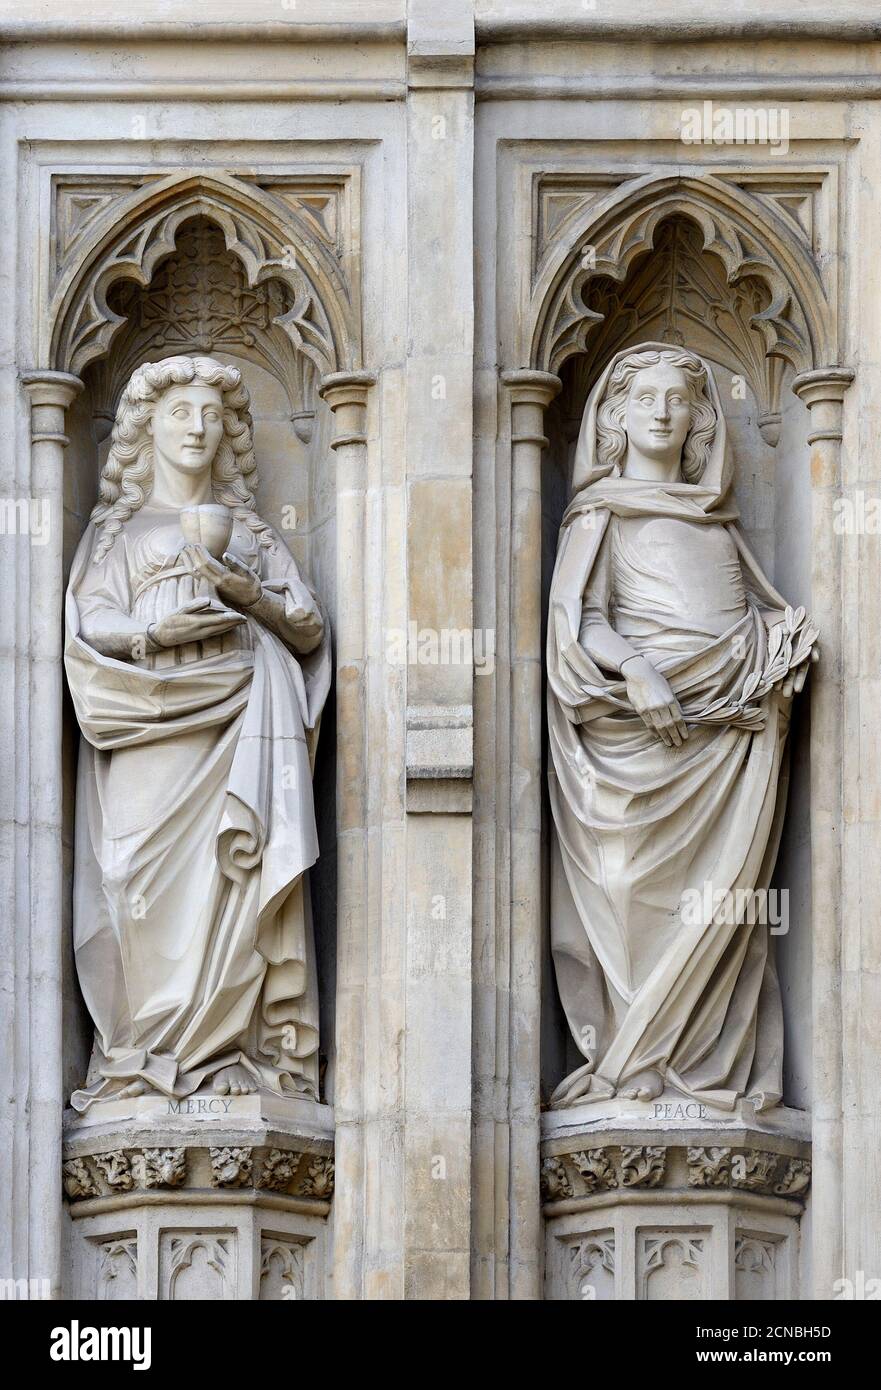 Londra, Inghilterra, Regno Unito. Facciata ovest dell'abbazia di Westminster: Statue allegoriche che rappresentano la Misericordia e la Pace Foto Stock